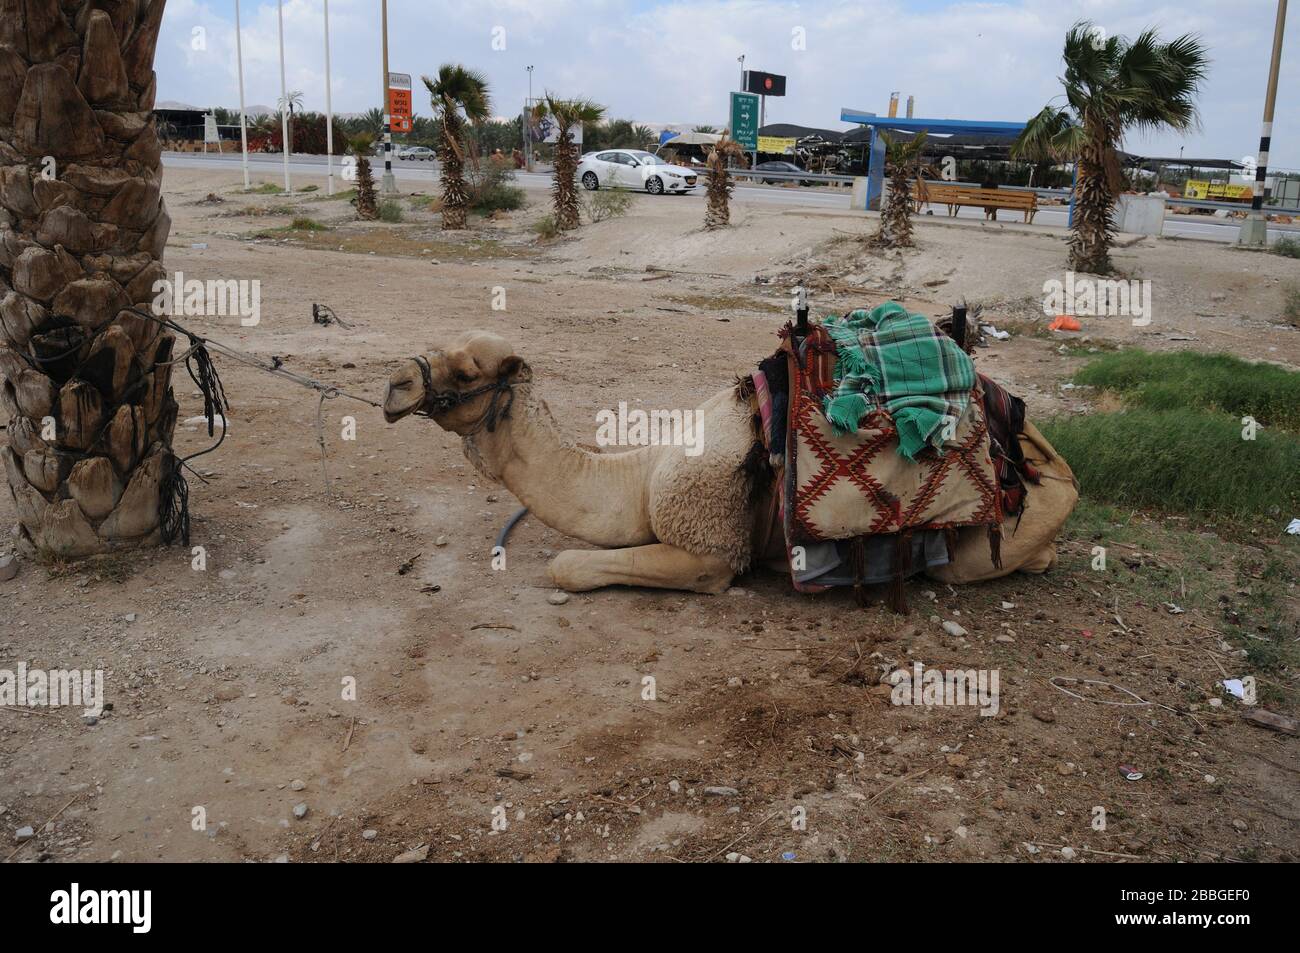 Camel dromadaire dans le désert en Israël Banque D'Images